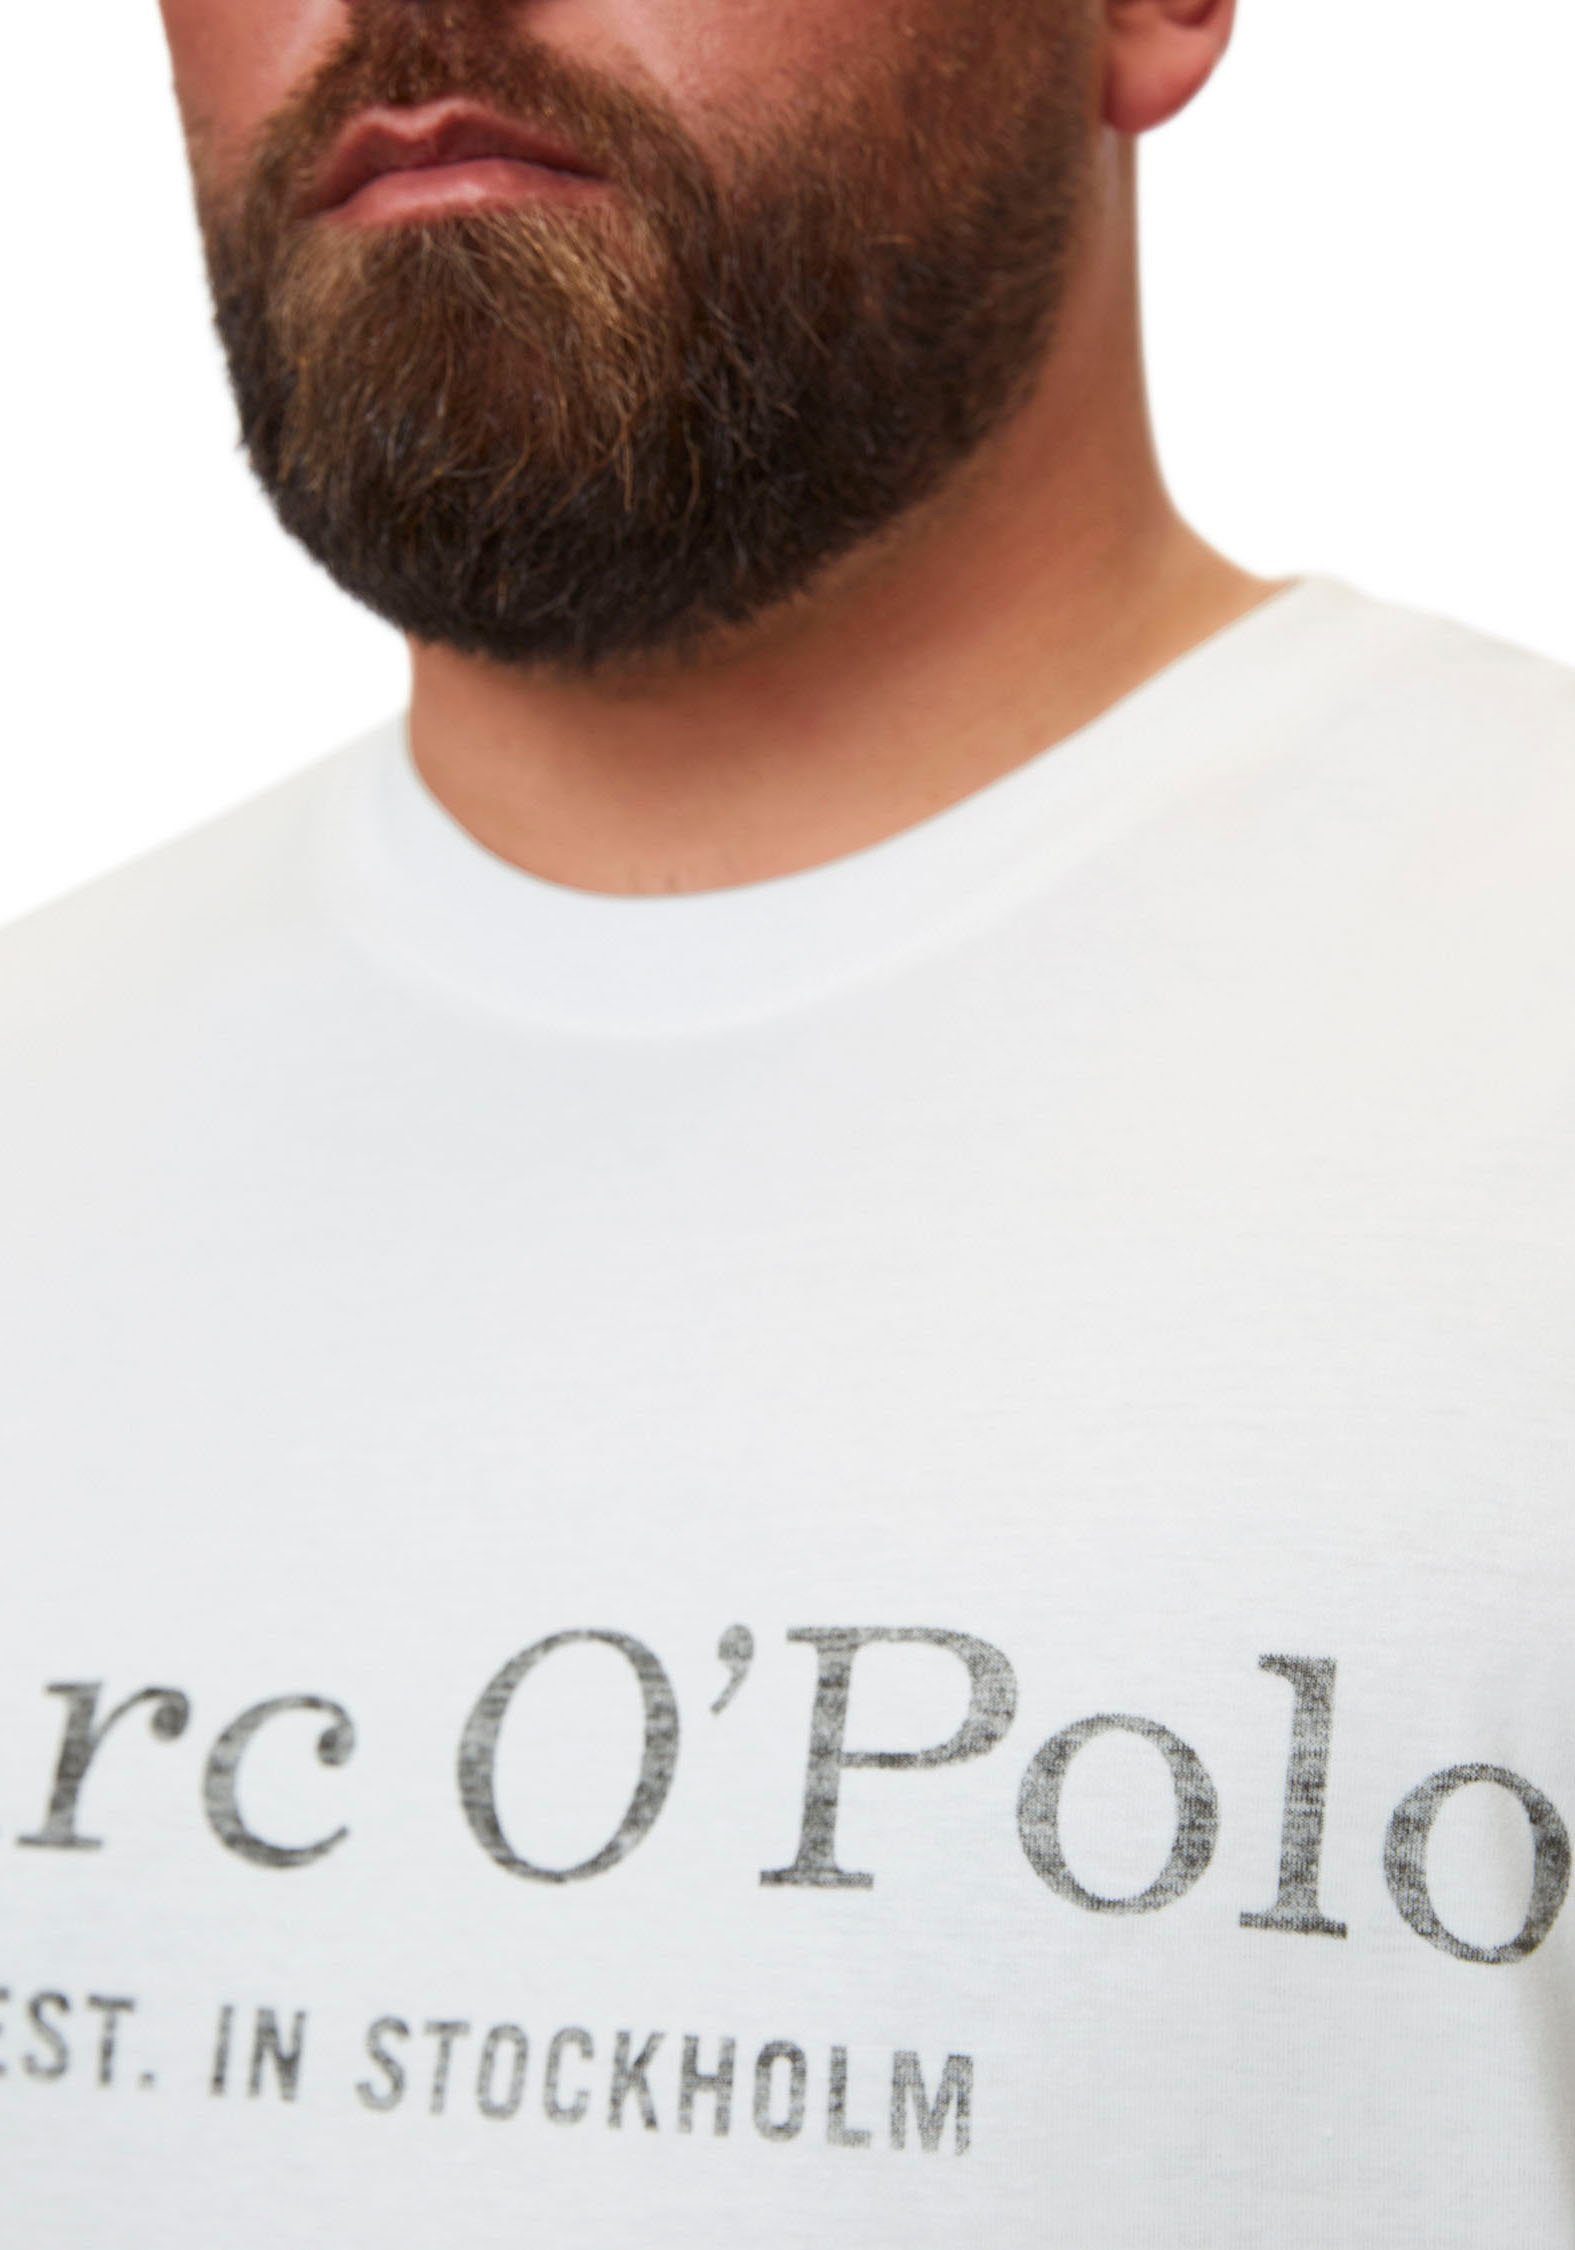 Marc O'Polo in white T-Shirt Big&Tall-Größen